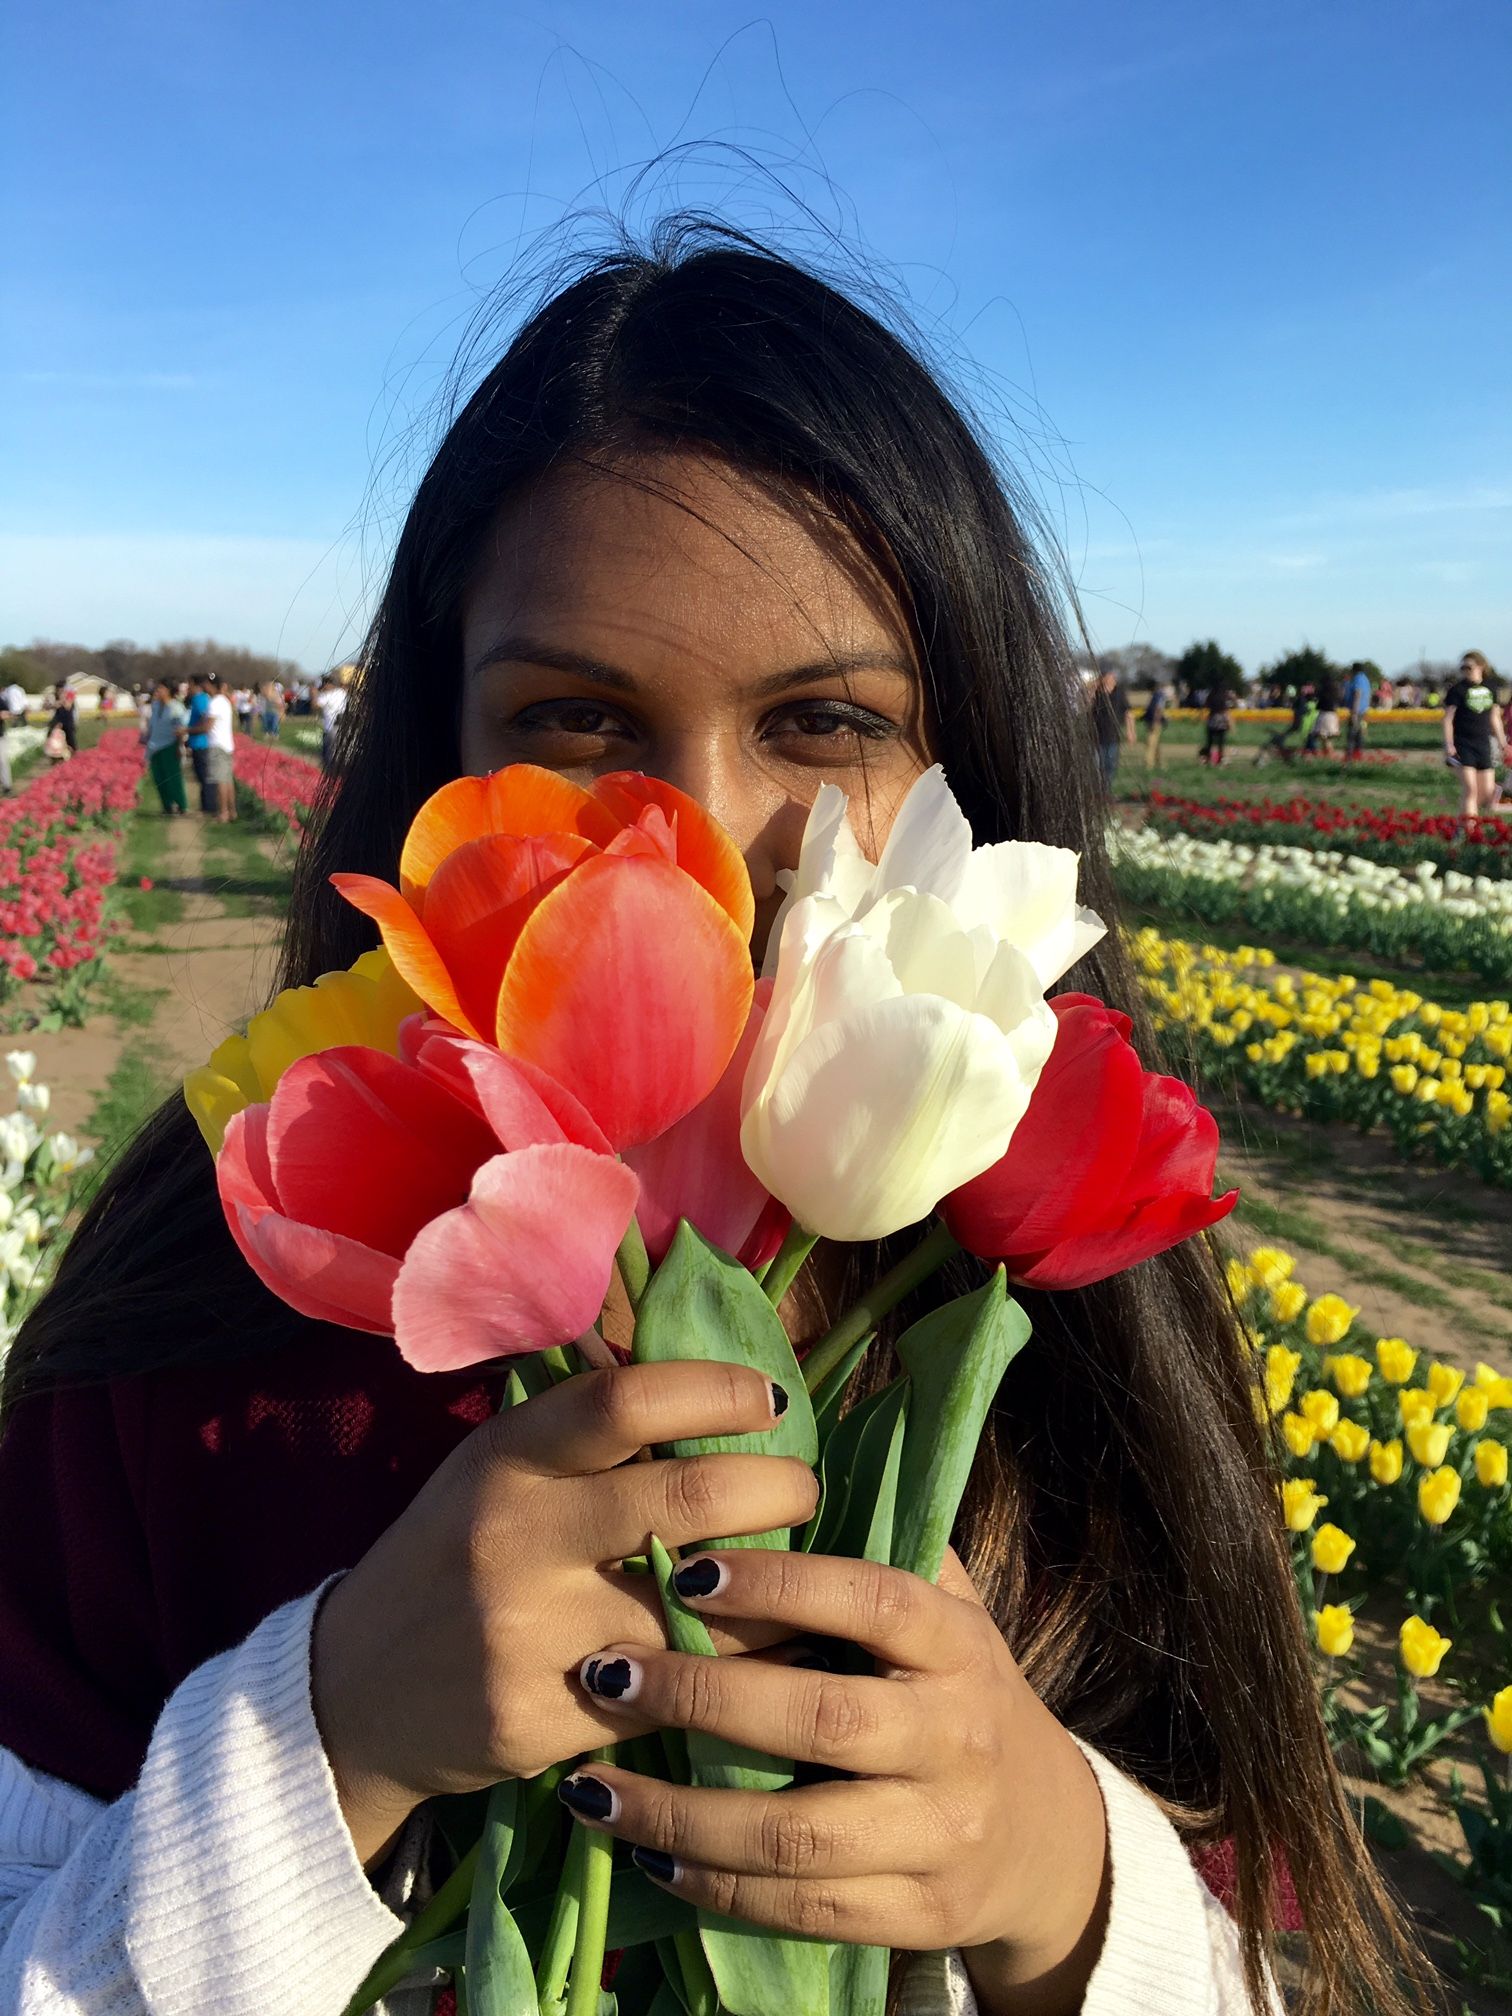 Фото с тюльпанами на улице. Селфи с тюльпанами. Селфи с цветами. Селфи с тюльпанами девушка. Девушка с букетом тюльпанов.